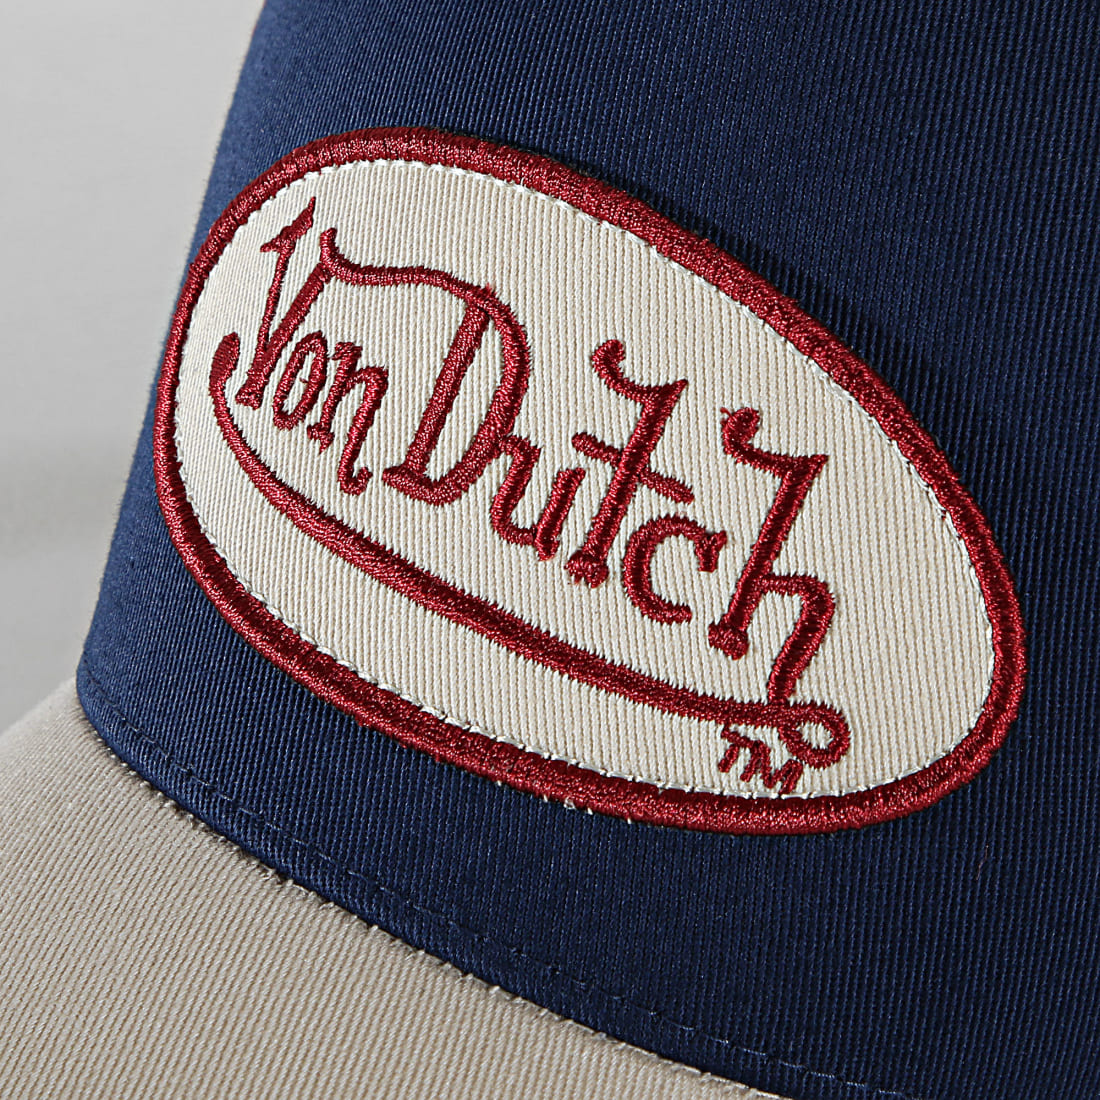 Casquette Von Dutch bleu marine bi-matière avec nom de la marque brodé en  relief beige à l'avant